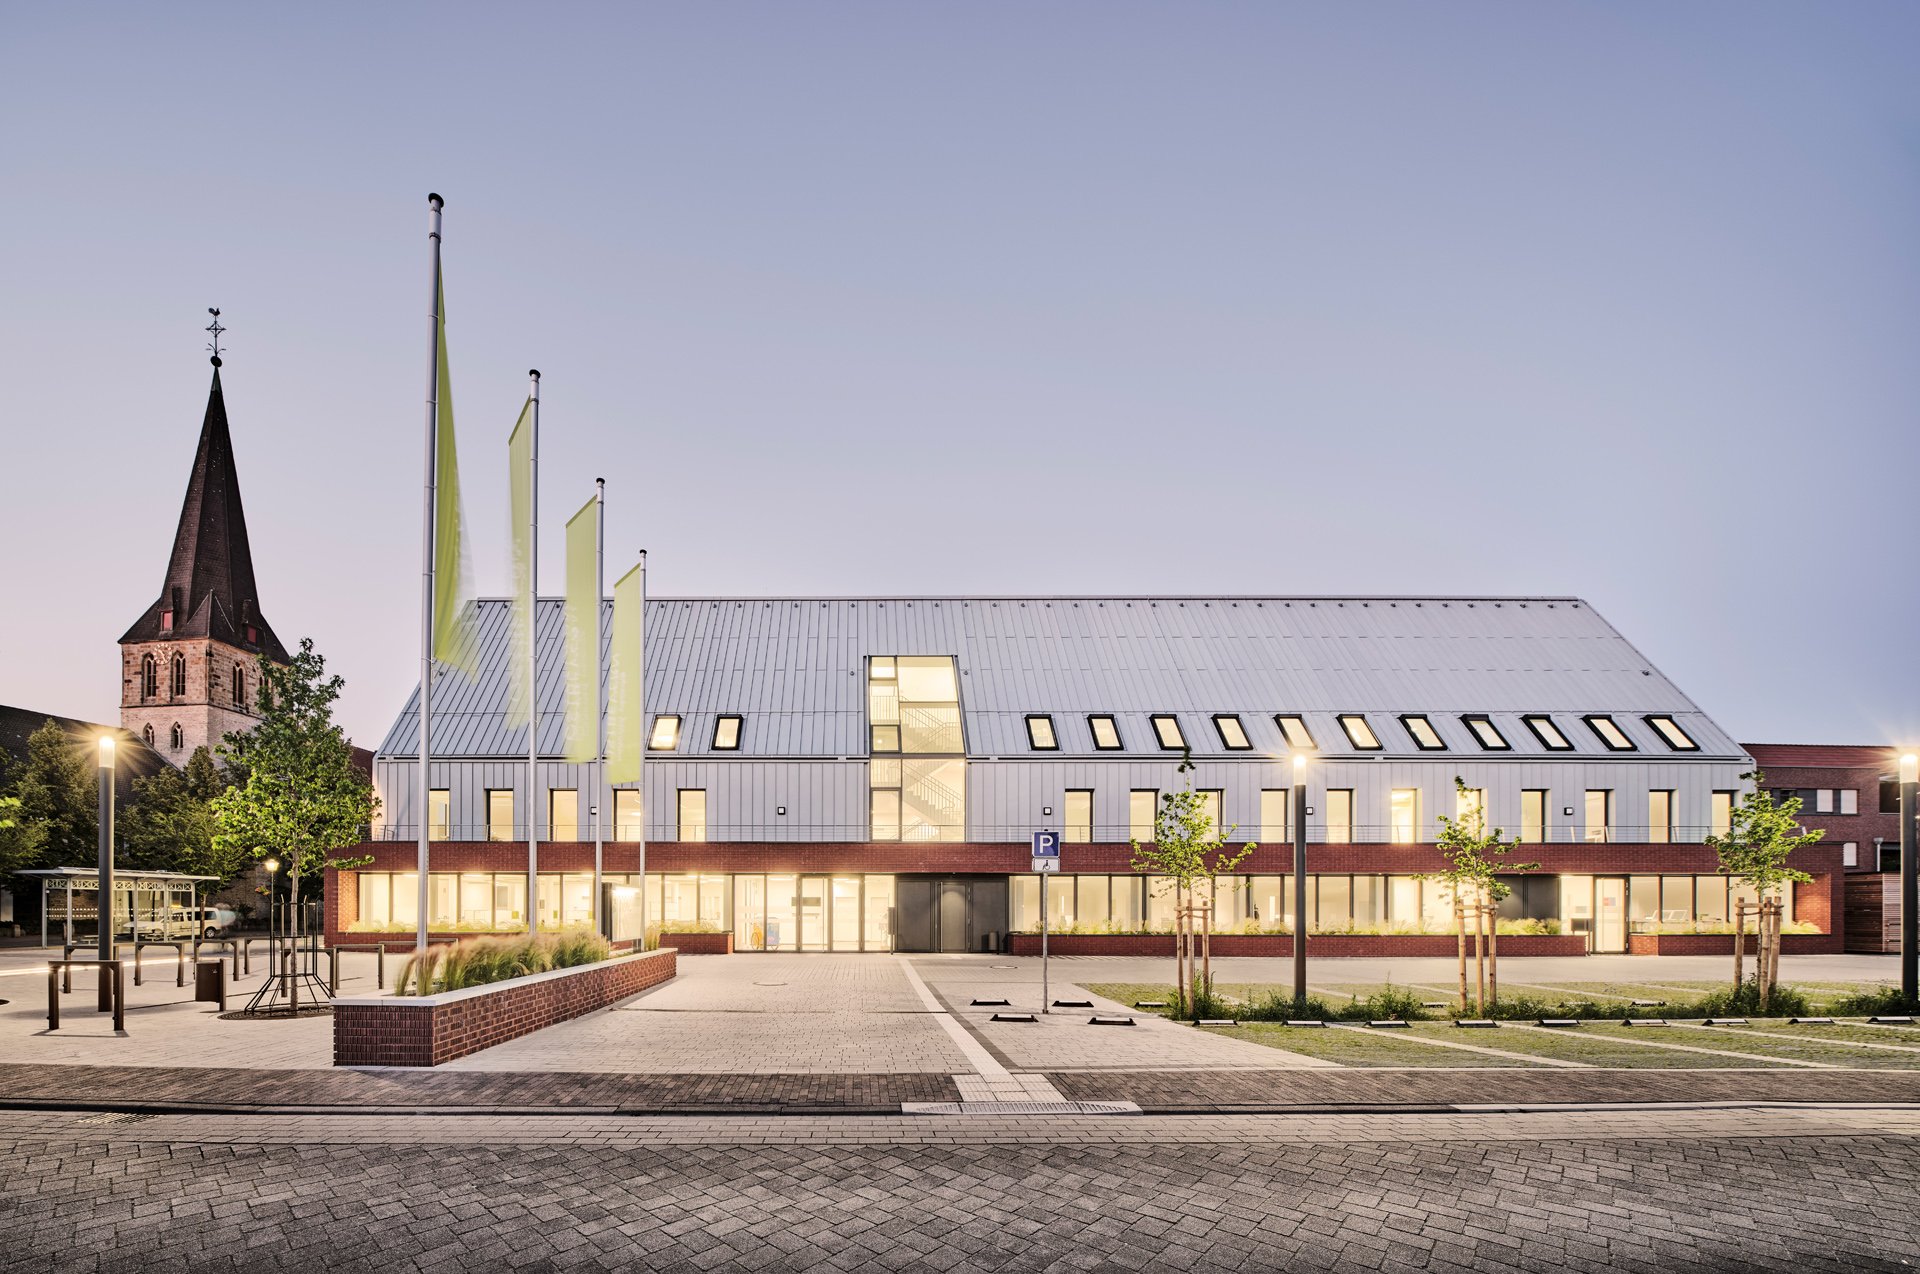  Rathaus Ostbevern, Entwurf SDBA Schnoklake Betz Dömer Architekten, Münster, Ostbevern, 2020-06-24, Foto: Caspar Sessler 